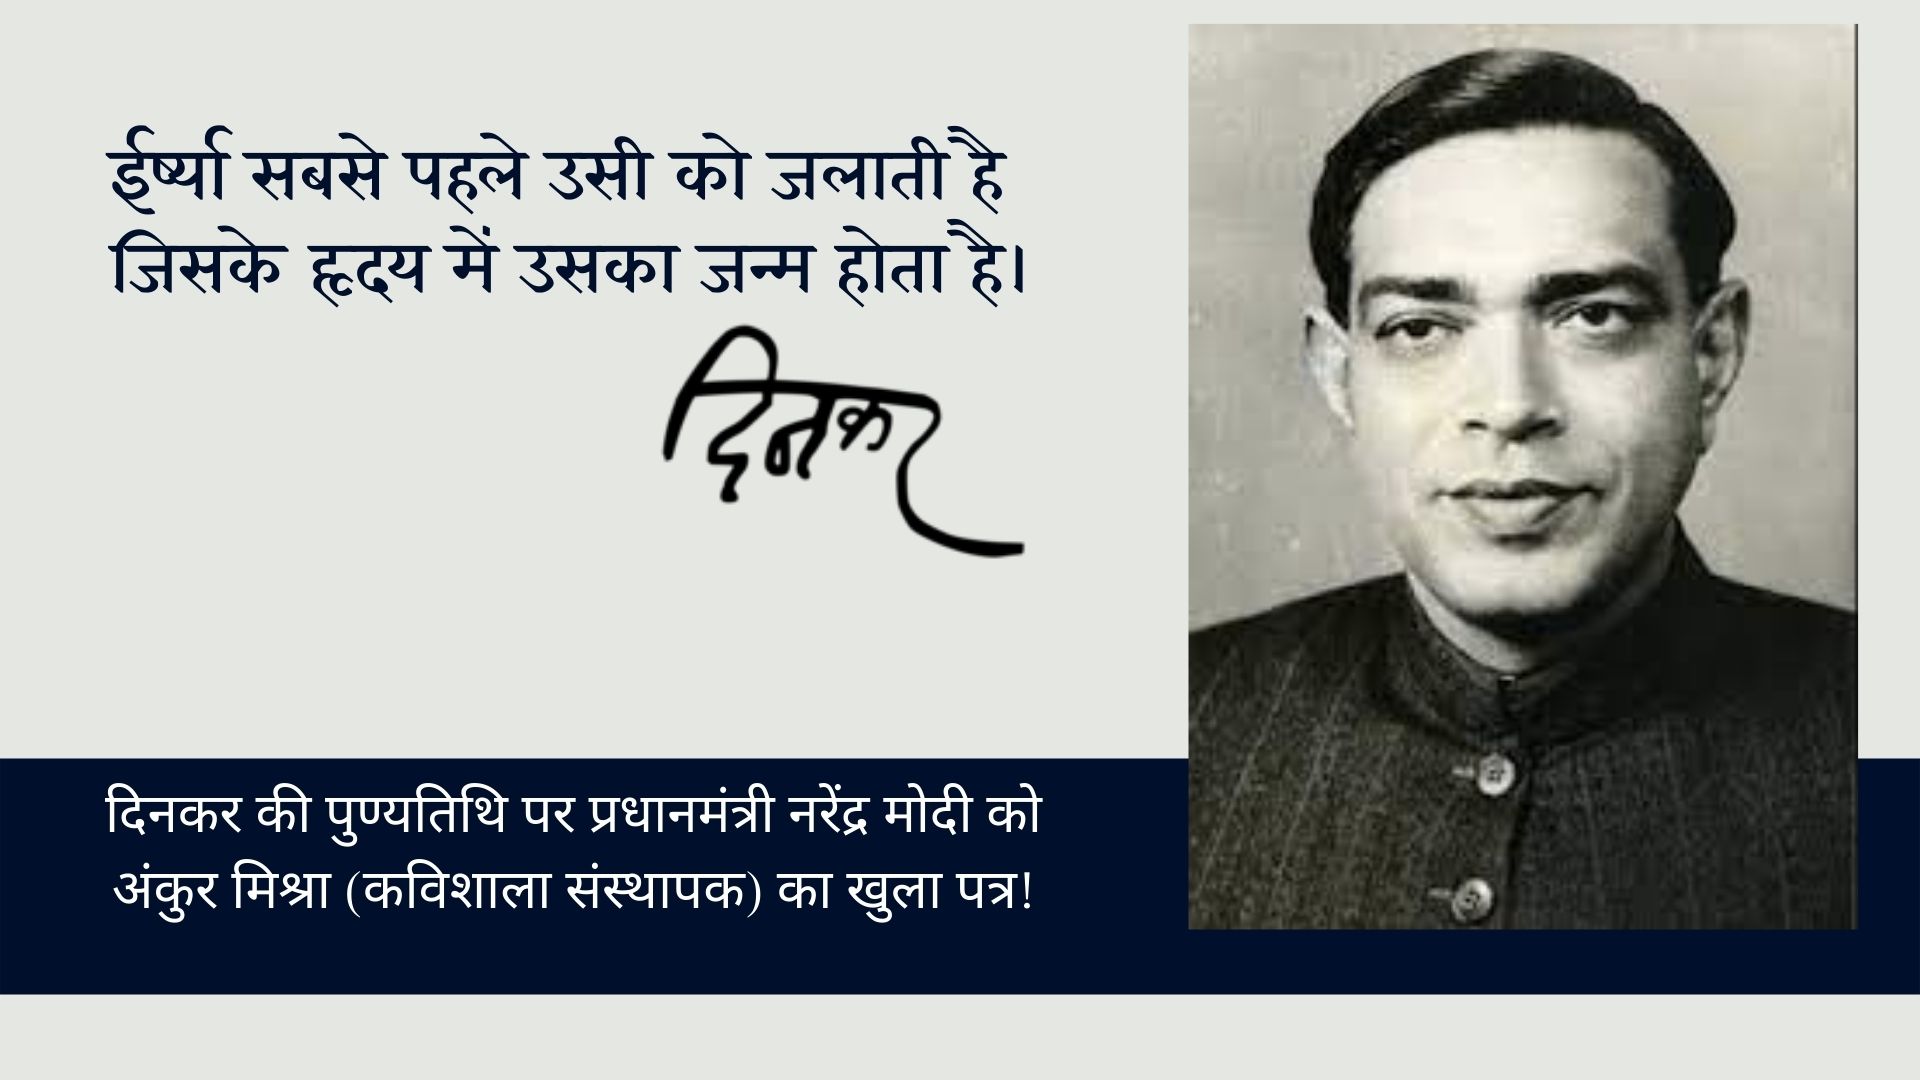 दिनकर की पुण्यतिथि पर प्रधानमंत्री नरेंद्र मोदी को अंकुर मिश्रा (कविशाला संस्थापक) का खुला पत्र's image